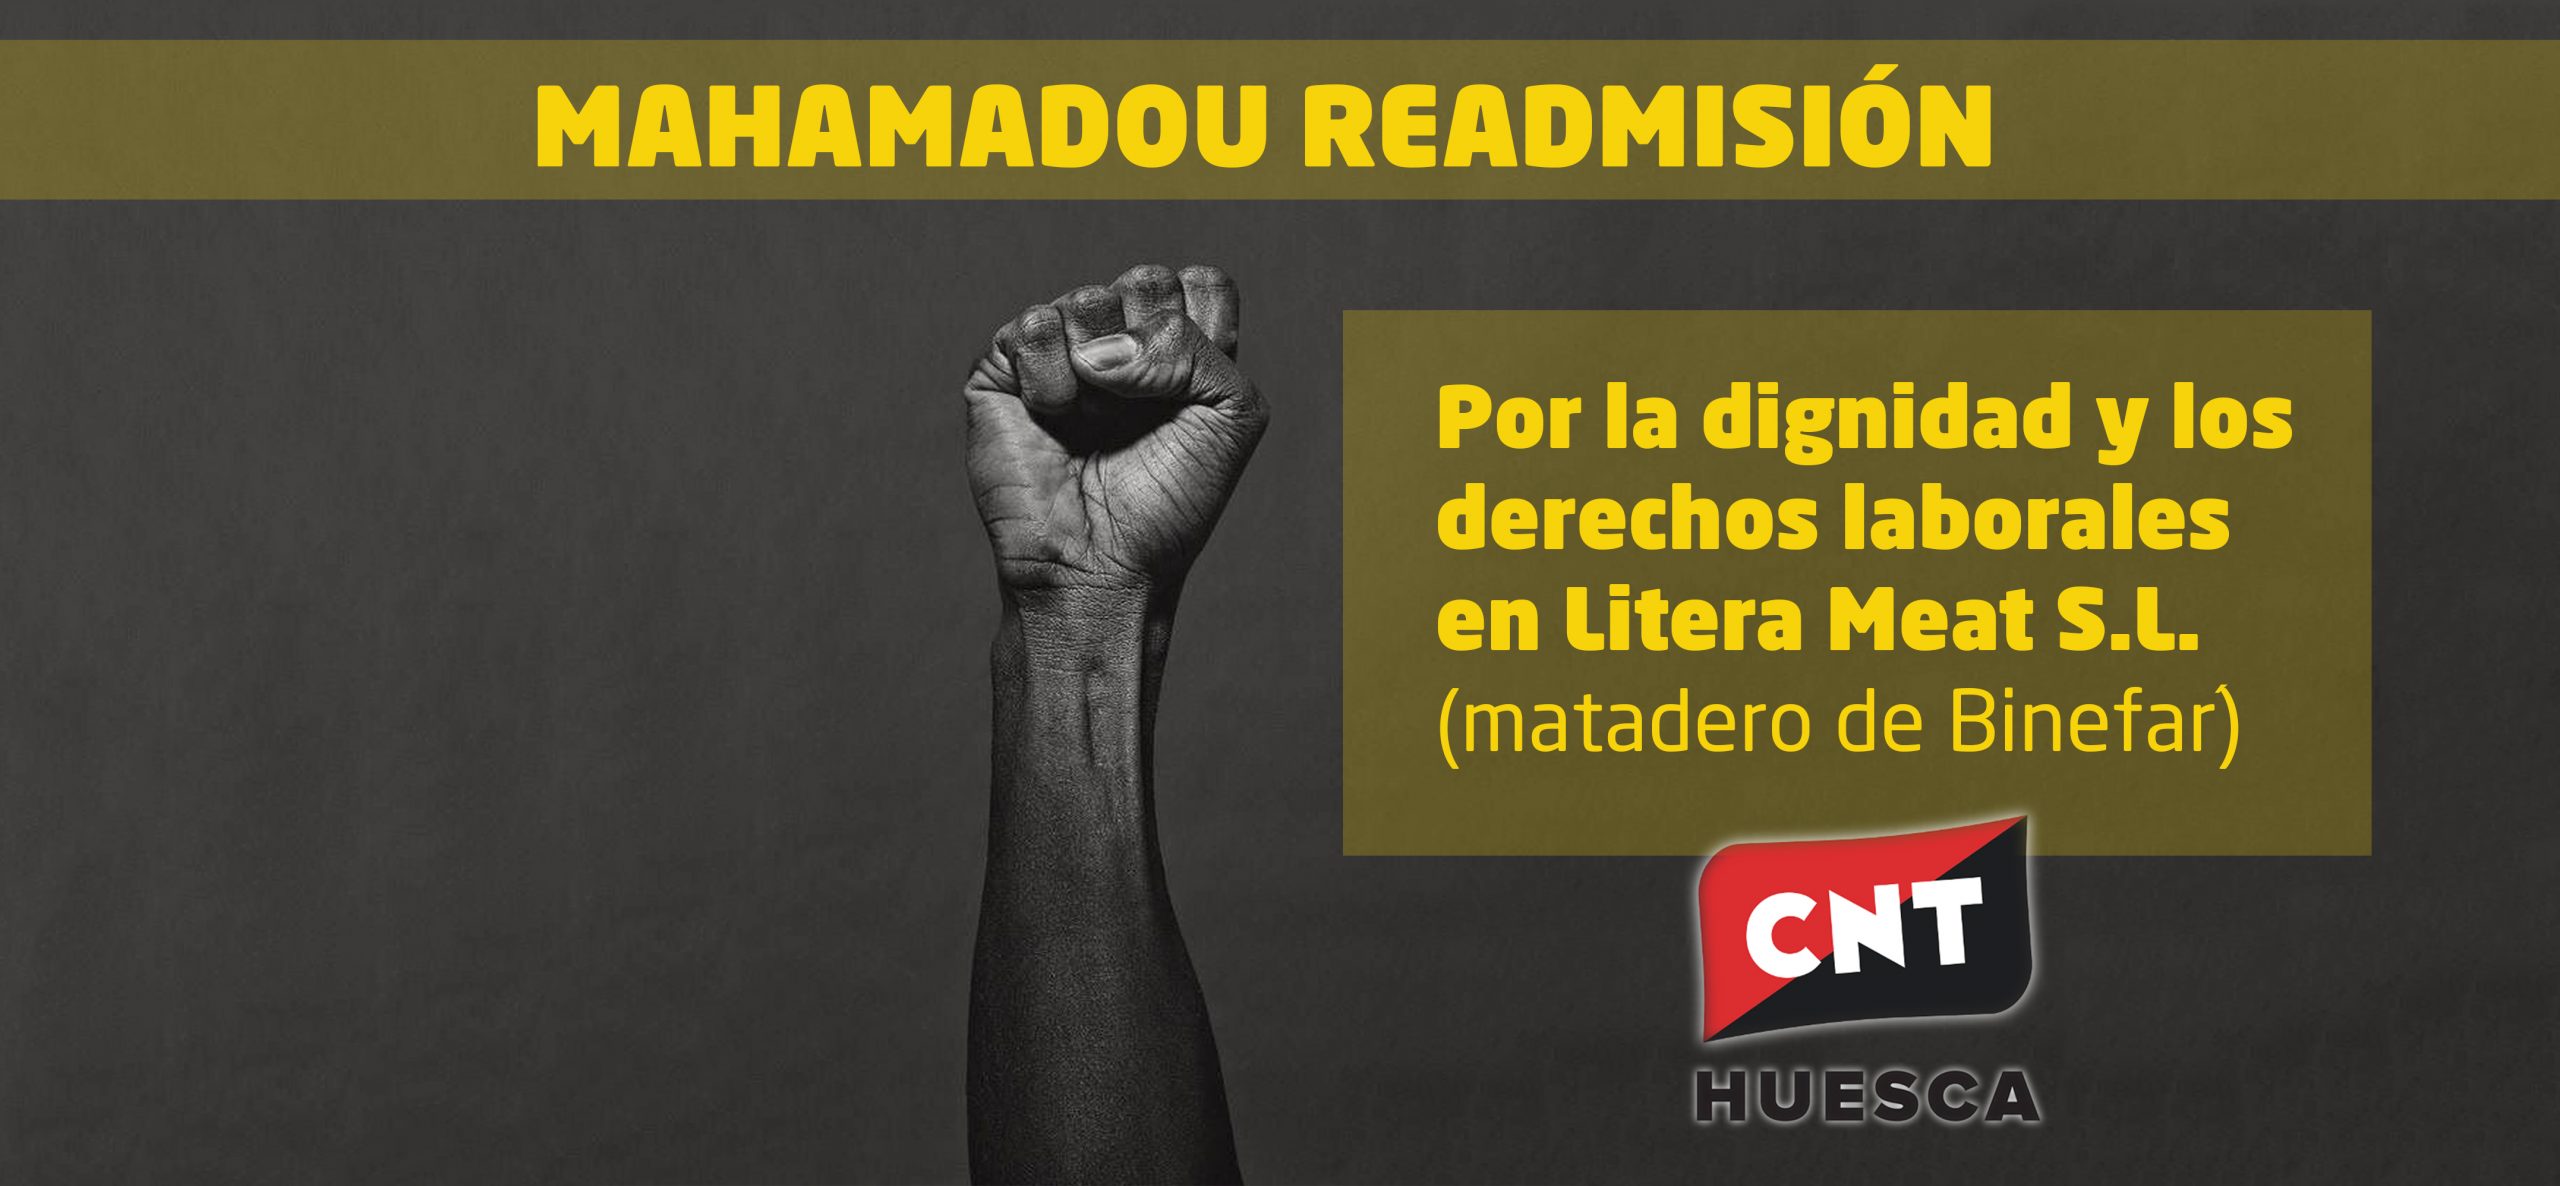 Comienza la campaña por la READMISIÓN DE MAHAMADOU, el Delegado Sindical de CNT despedido por Litera Meat S.L.